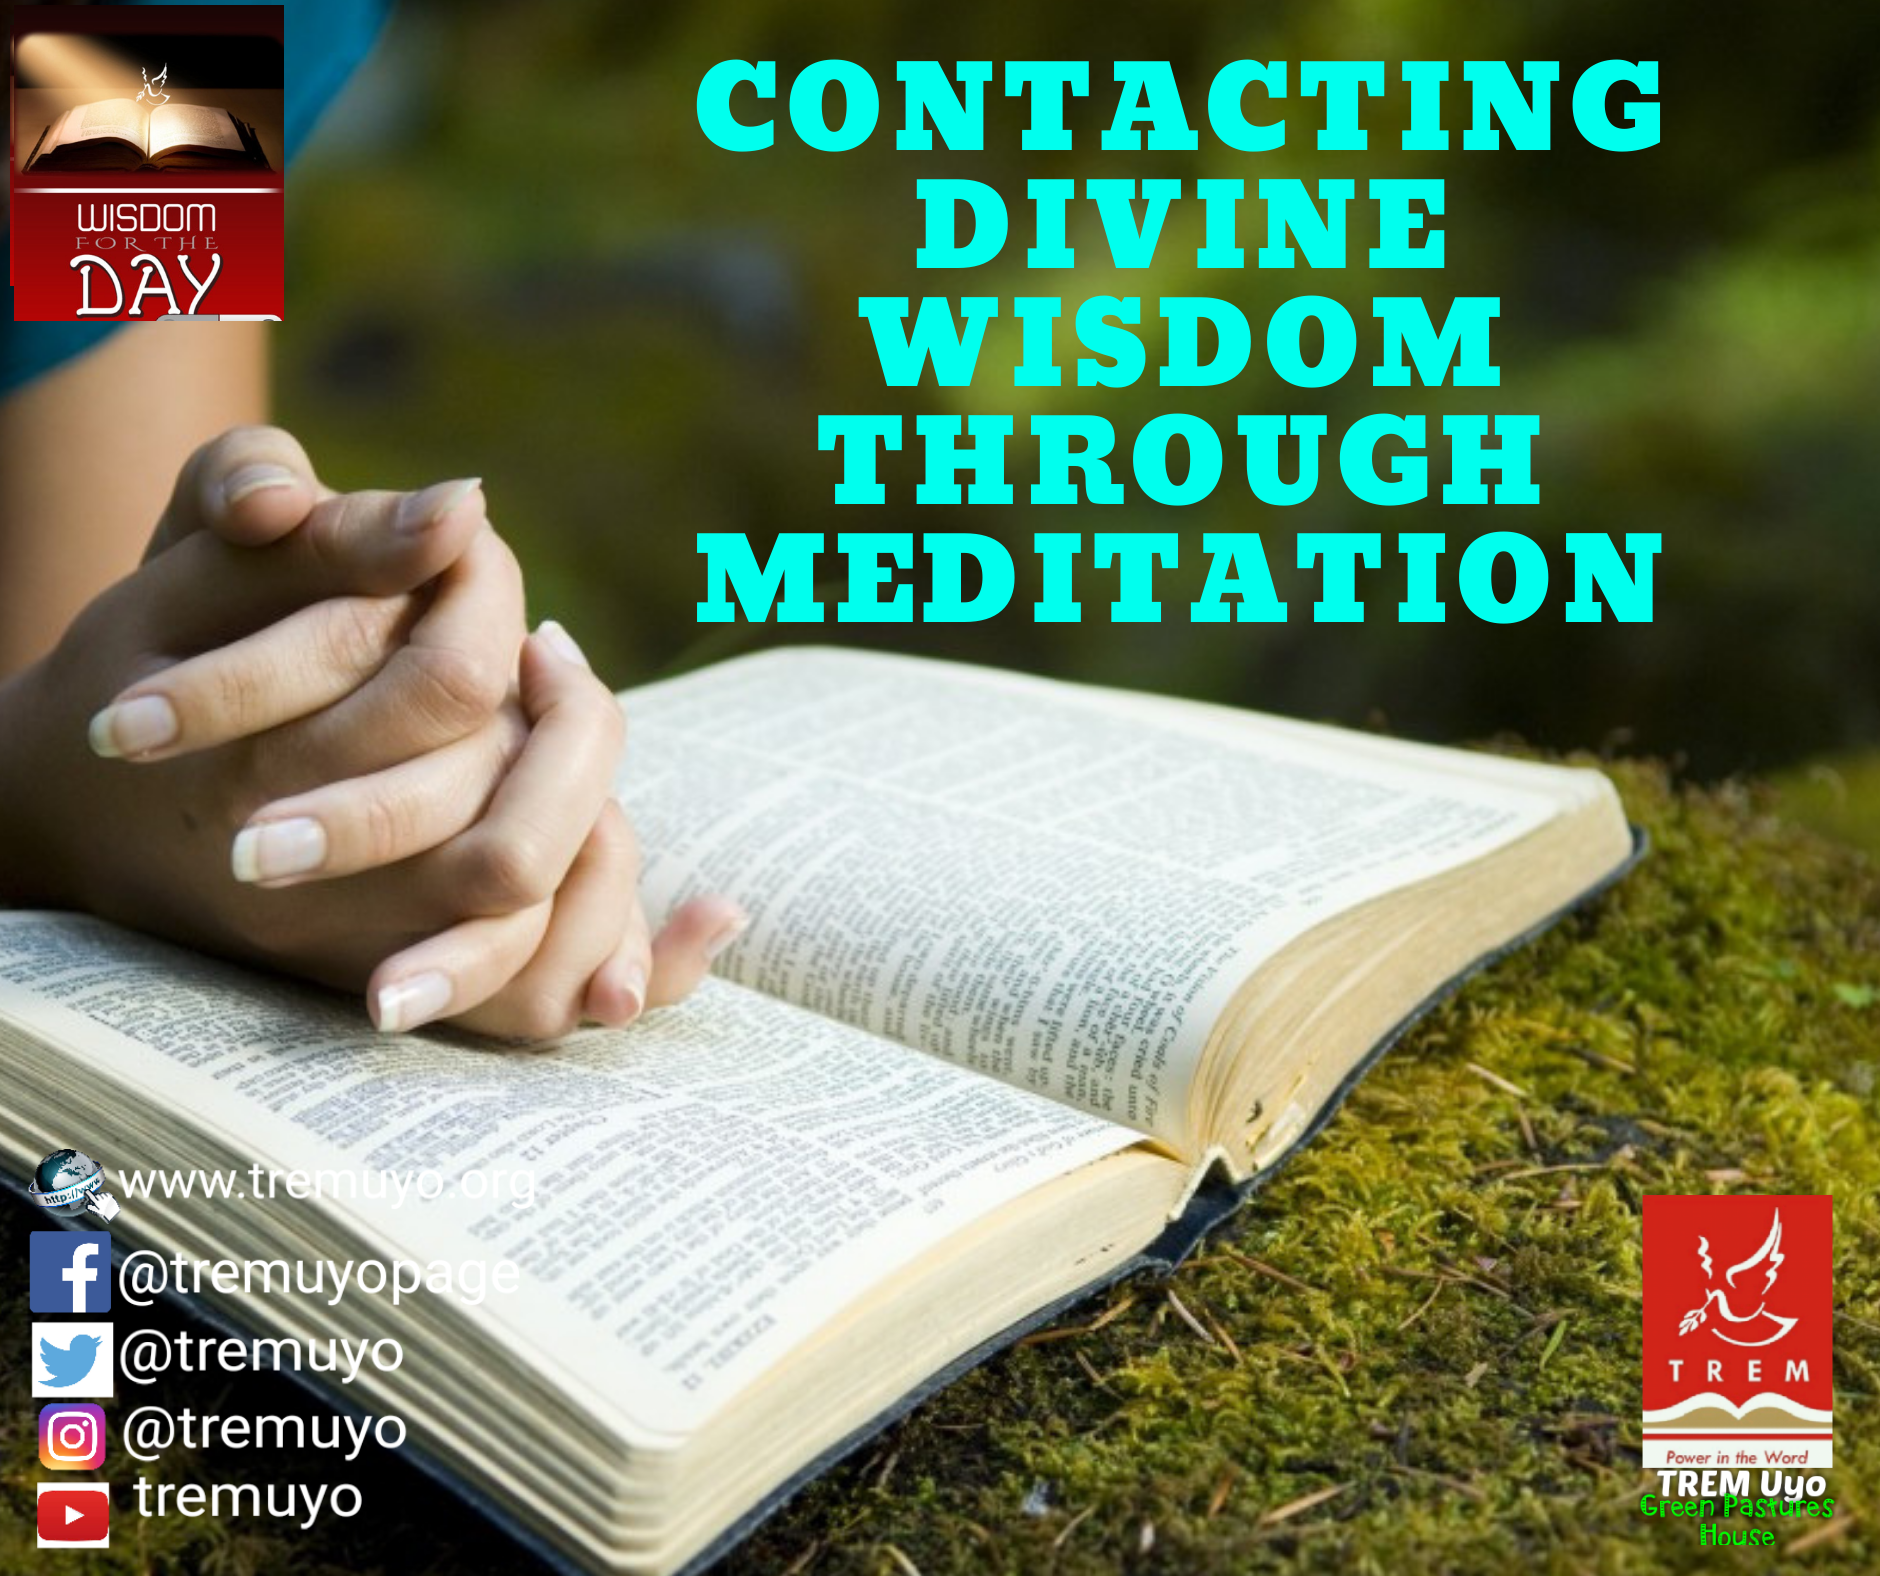 CONTACTING DIVINE WISDOM THROUGH MEDITATION